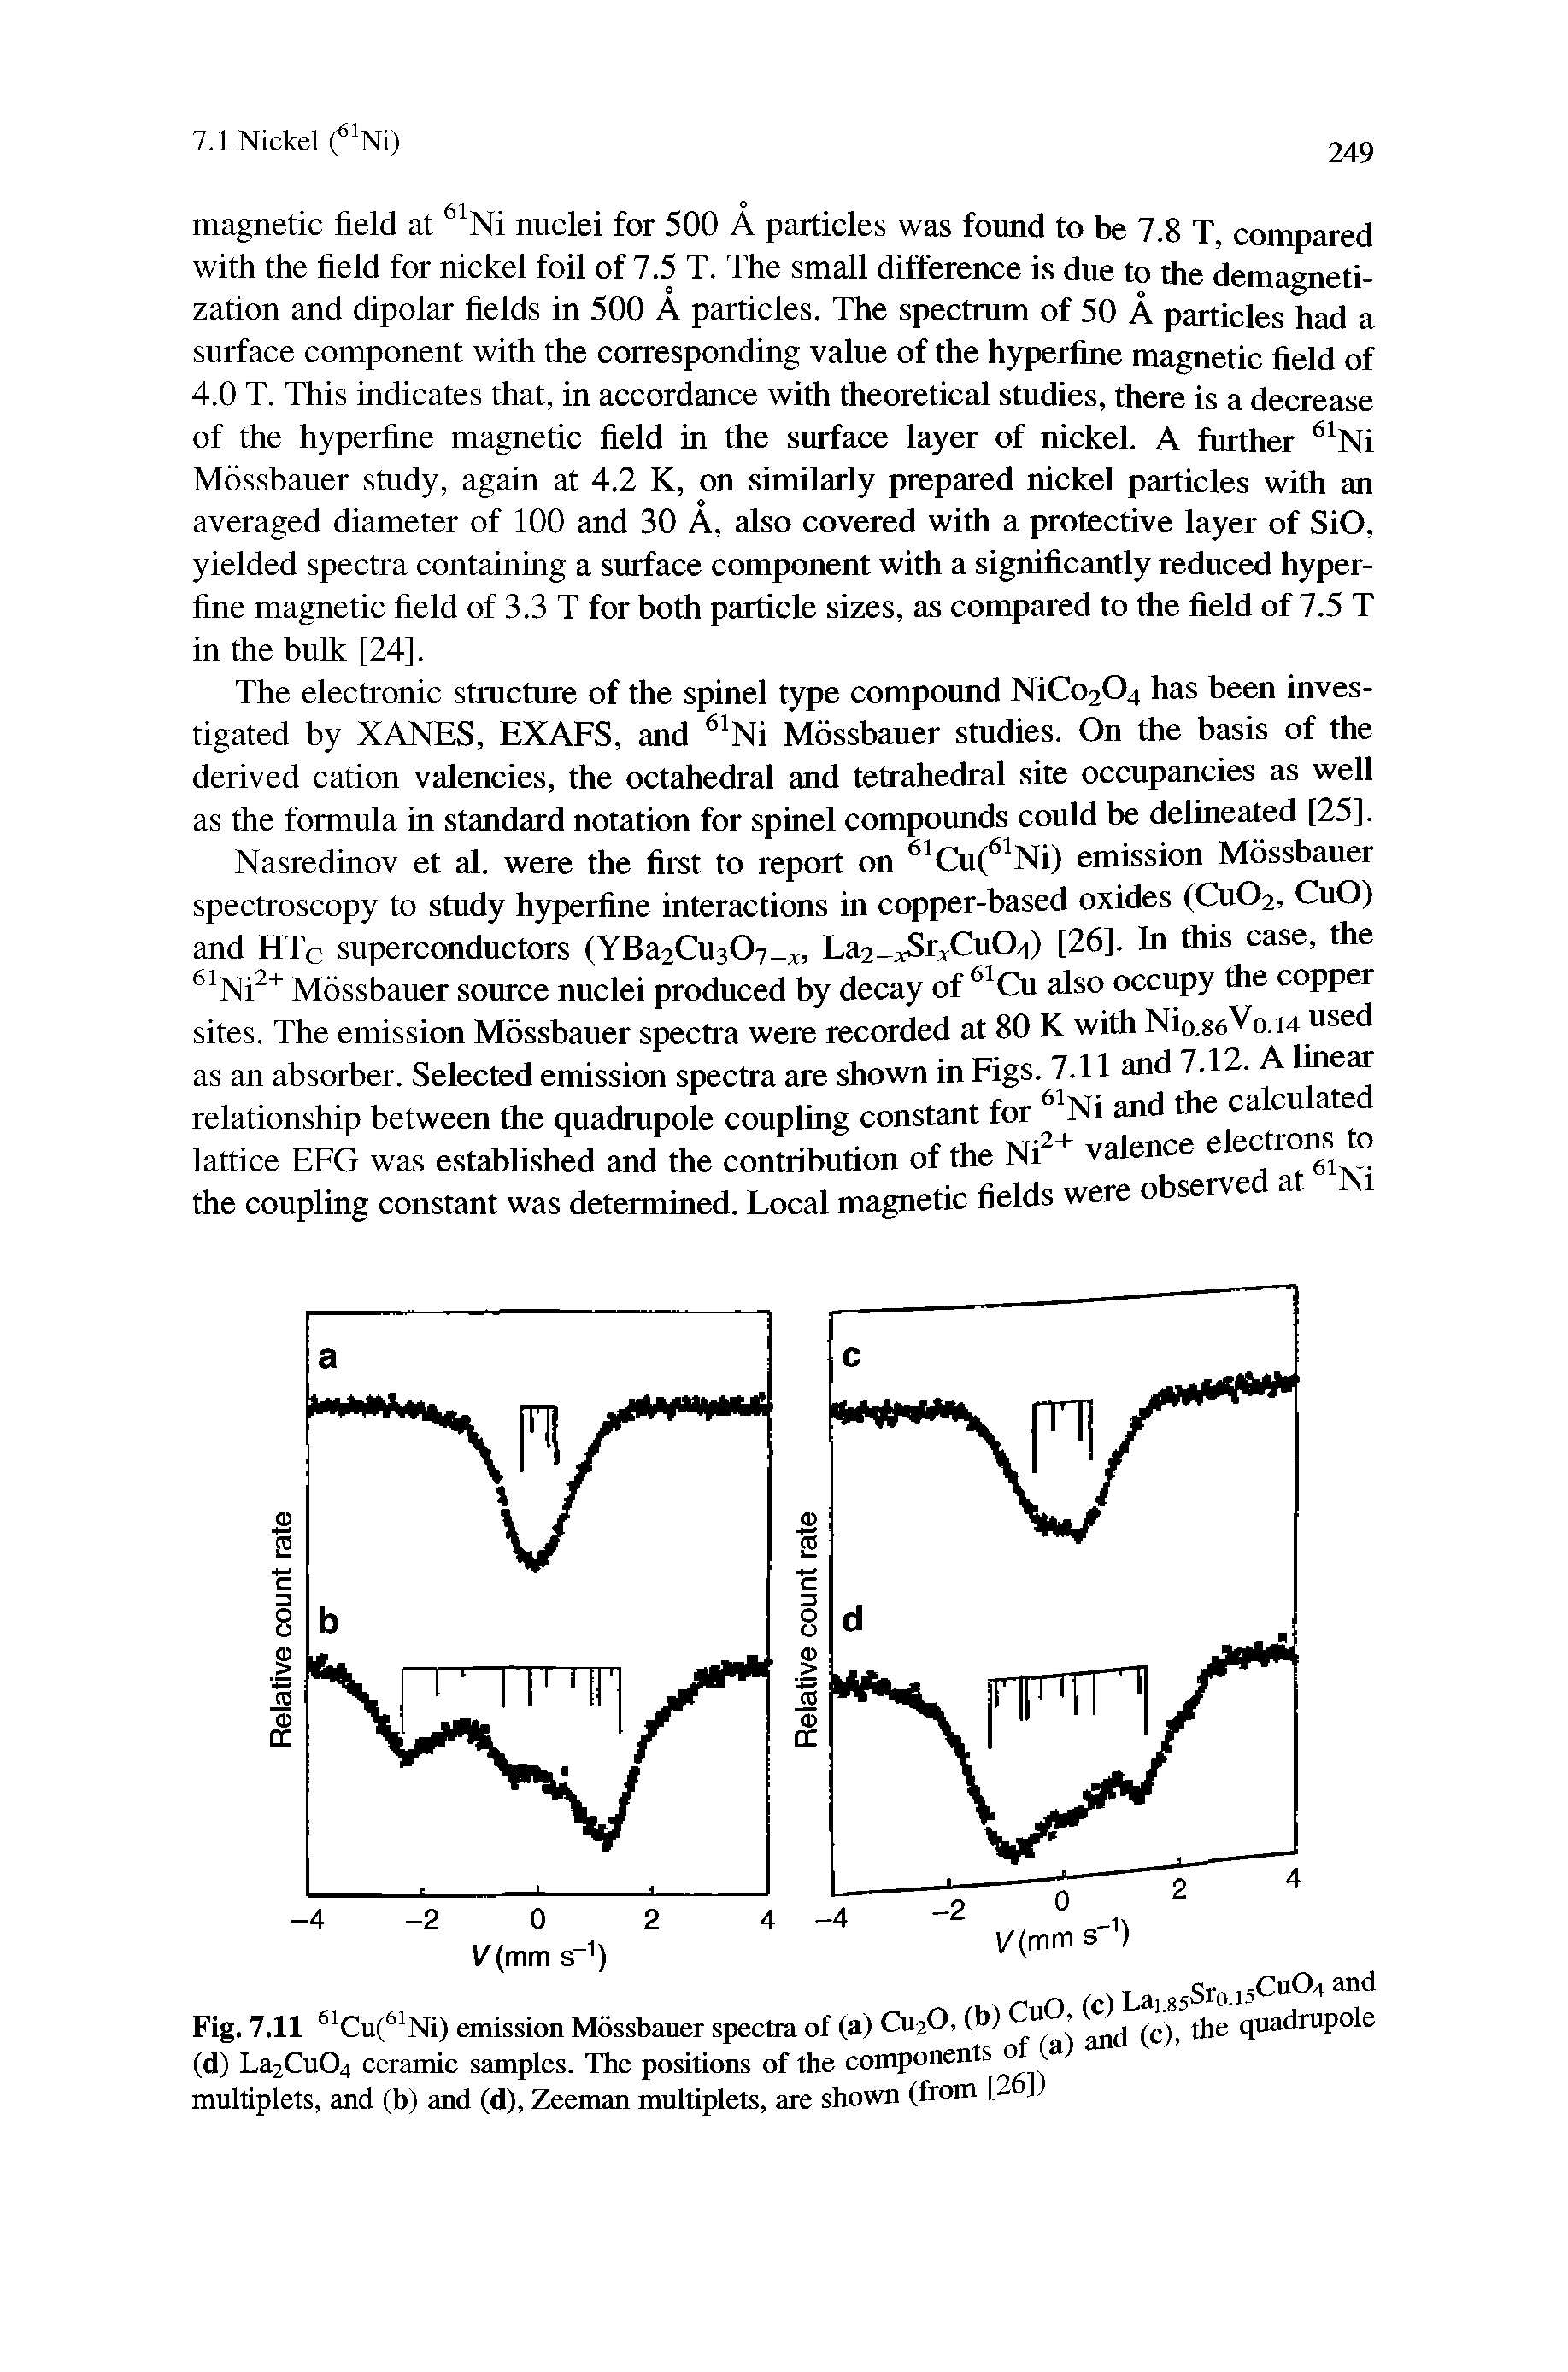 Fig. 7.11 Cu( Ni) emission Mdssbauer spectra of (a) CU2O, (b) jjje quadrupole...